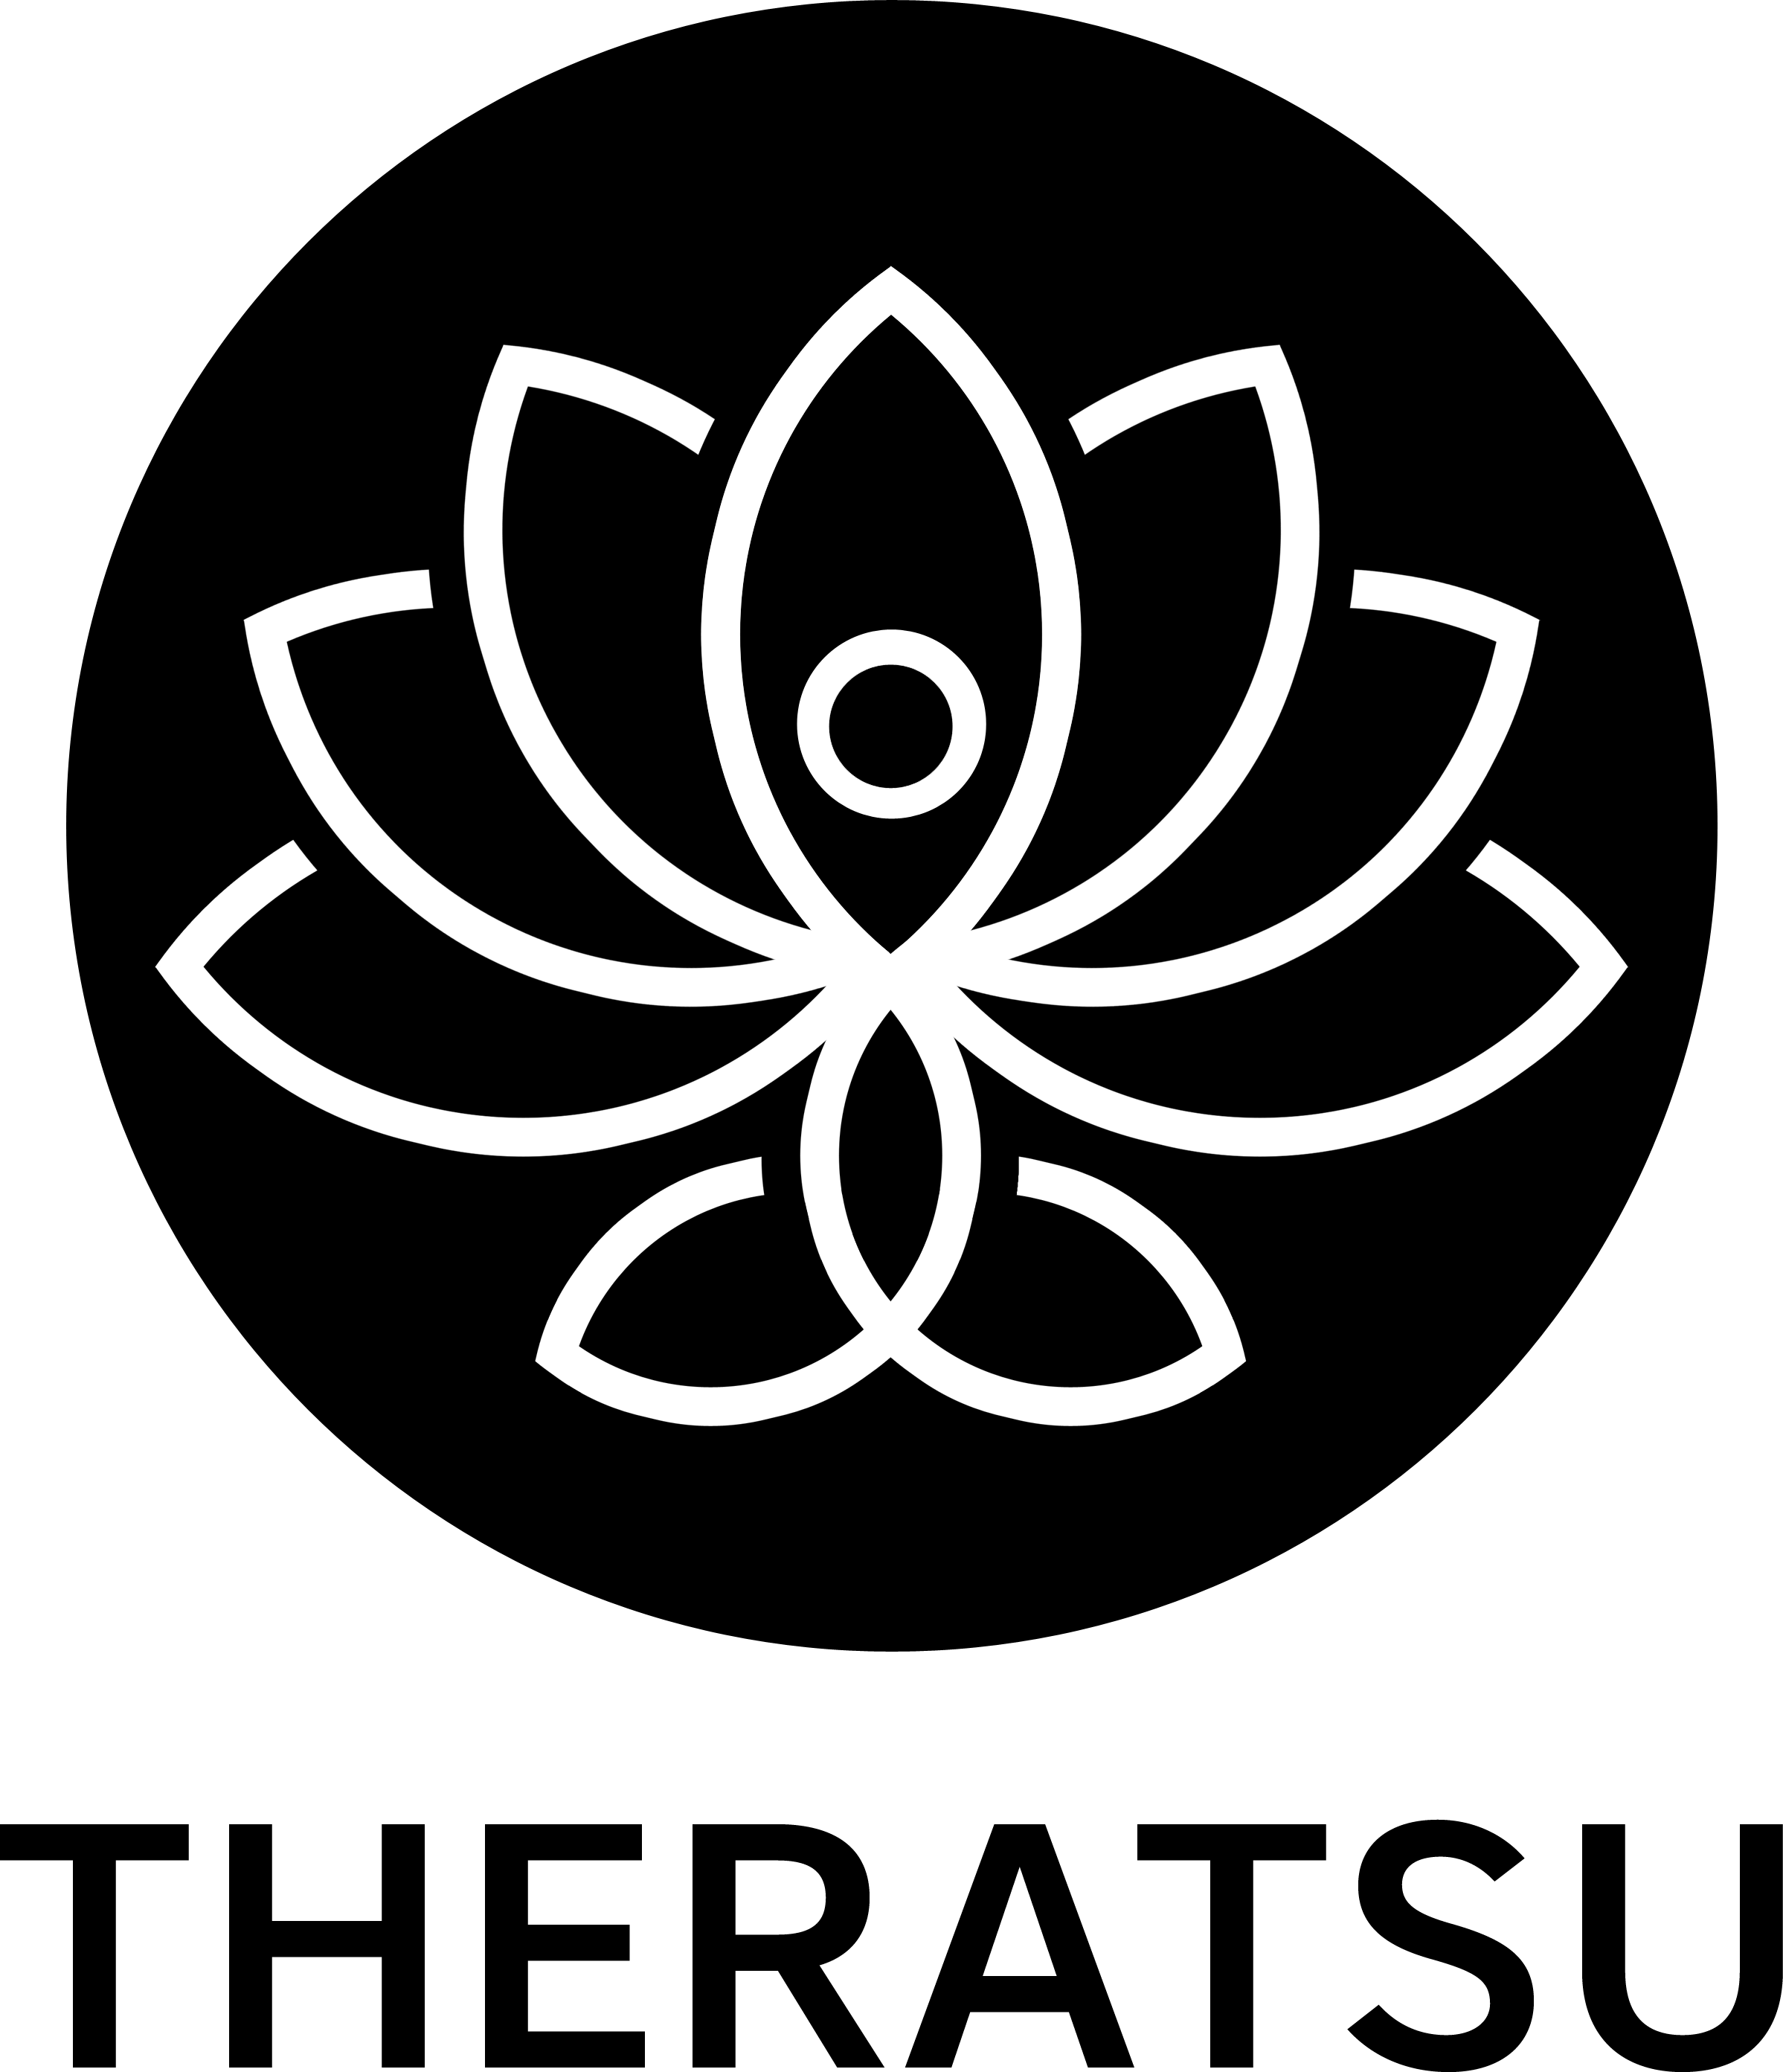 The Theratsu Logo in black and white.